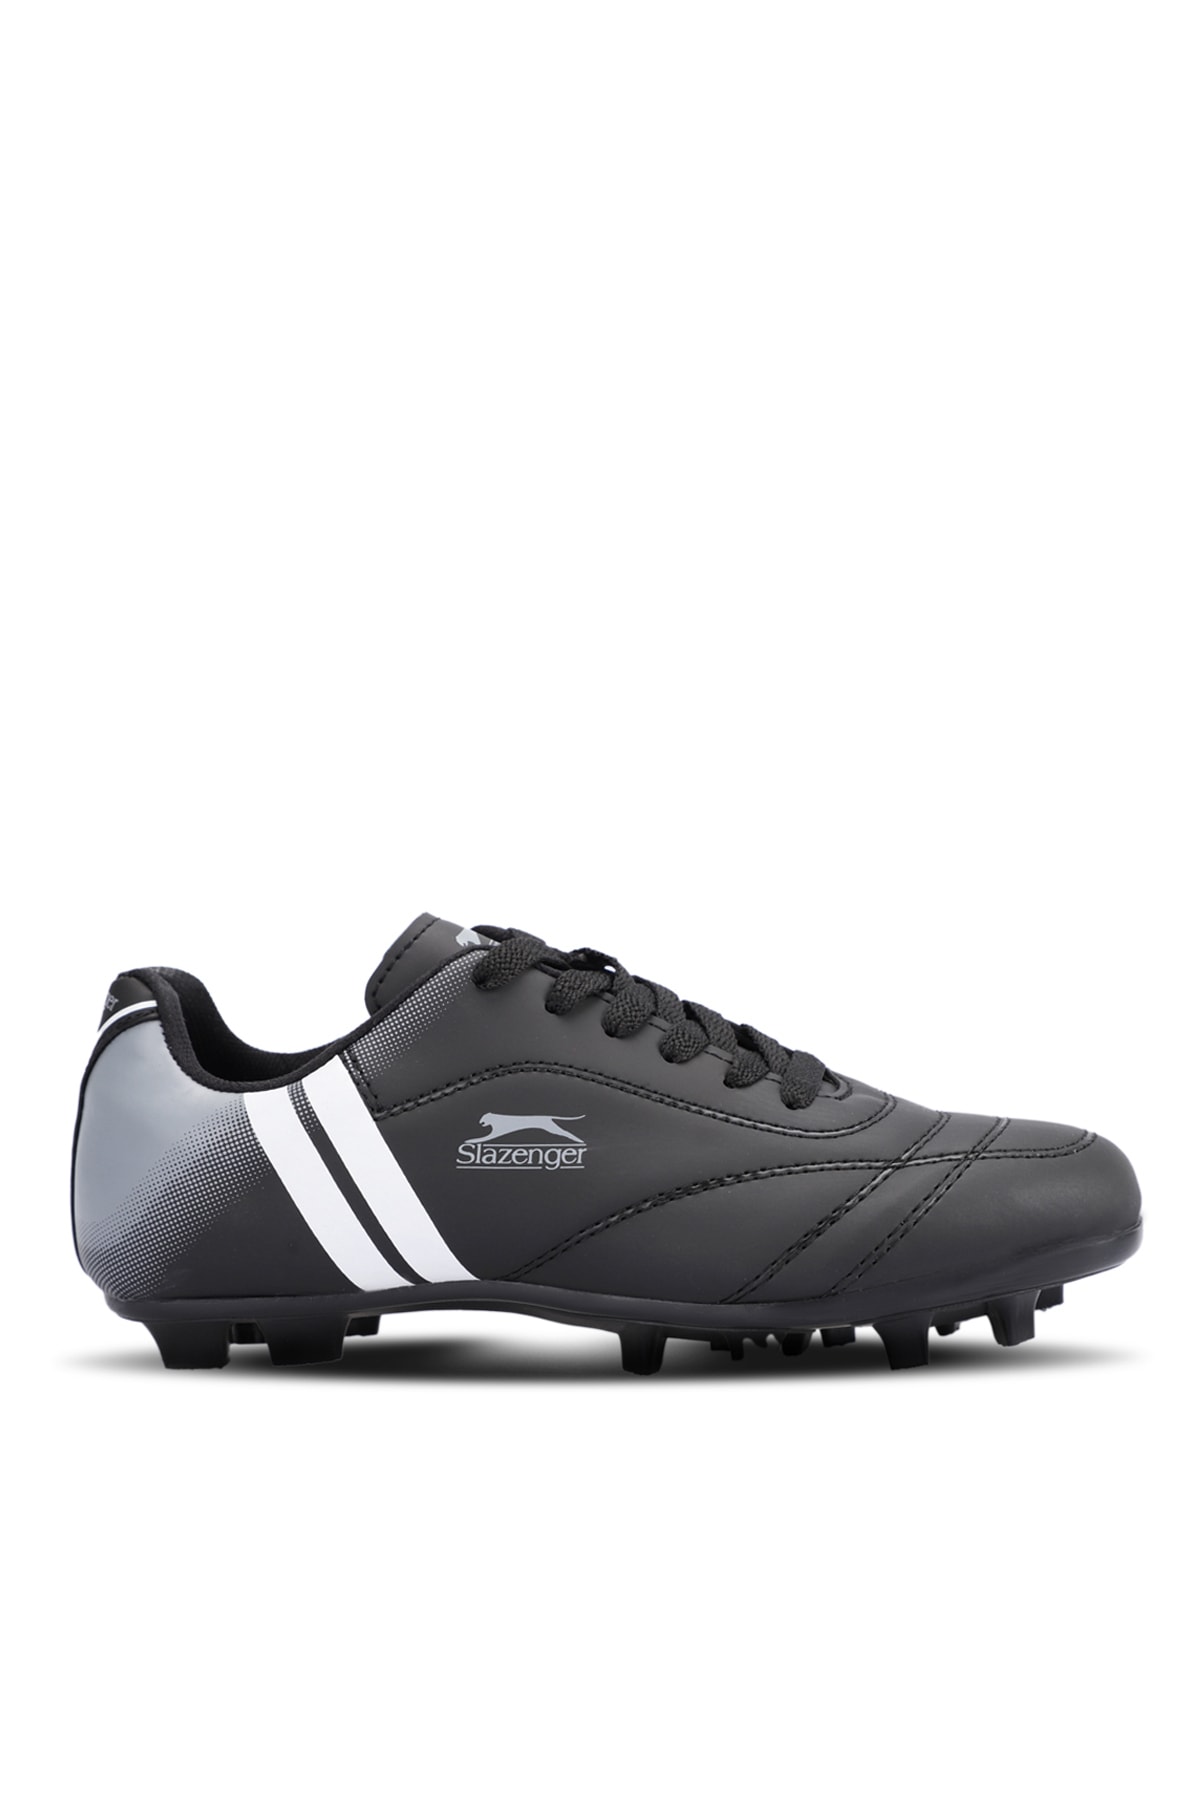 Slazenger Mark Krp Football Men's Astroturf Shoes Black / White